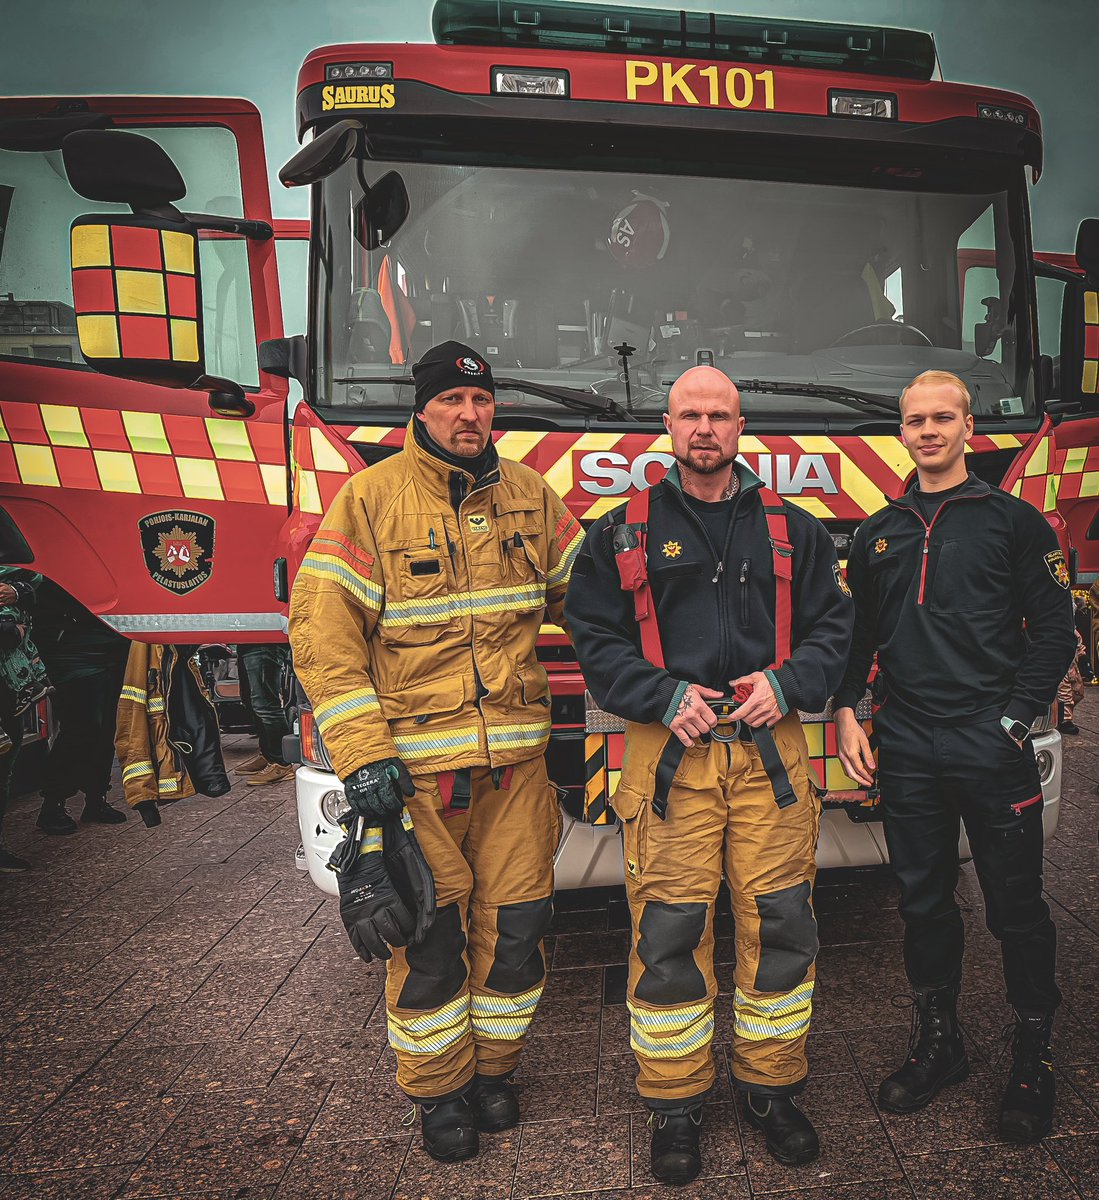 Hyvää kansainvälistä palomiesten / pelastajien päivää 🚒 Pelastajan työtehtäviin kuuluvat esim.liikenneonnettomuudet, ensivastetehtävät, tulipalot, palotarkastukset, valistaminen, ensihoitoa, avunantotehtävät ja korkeissa paikoissa työskentely. #pkpelastuslaitos #siunsote